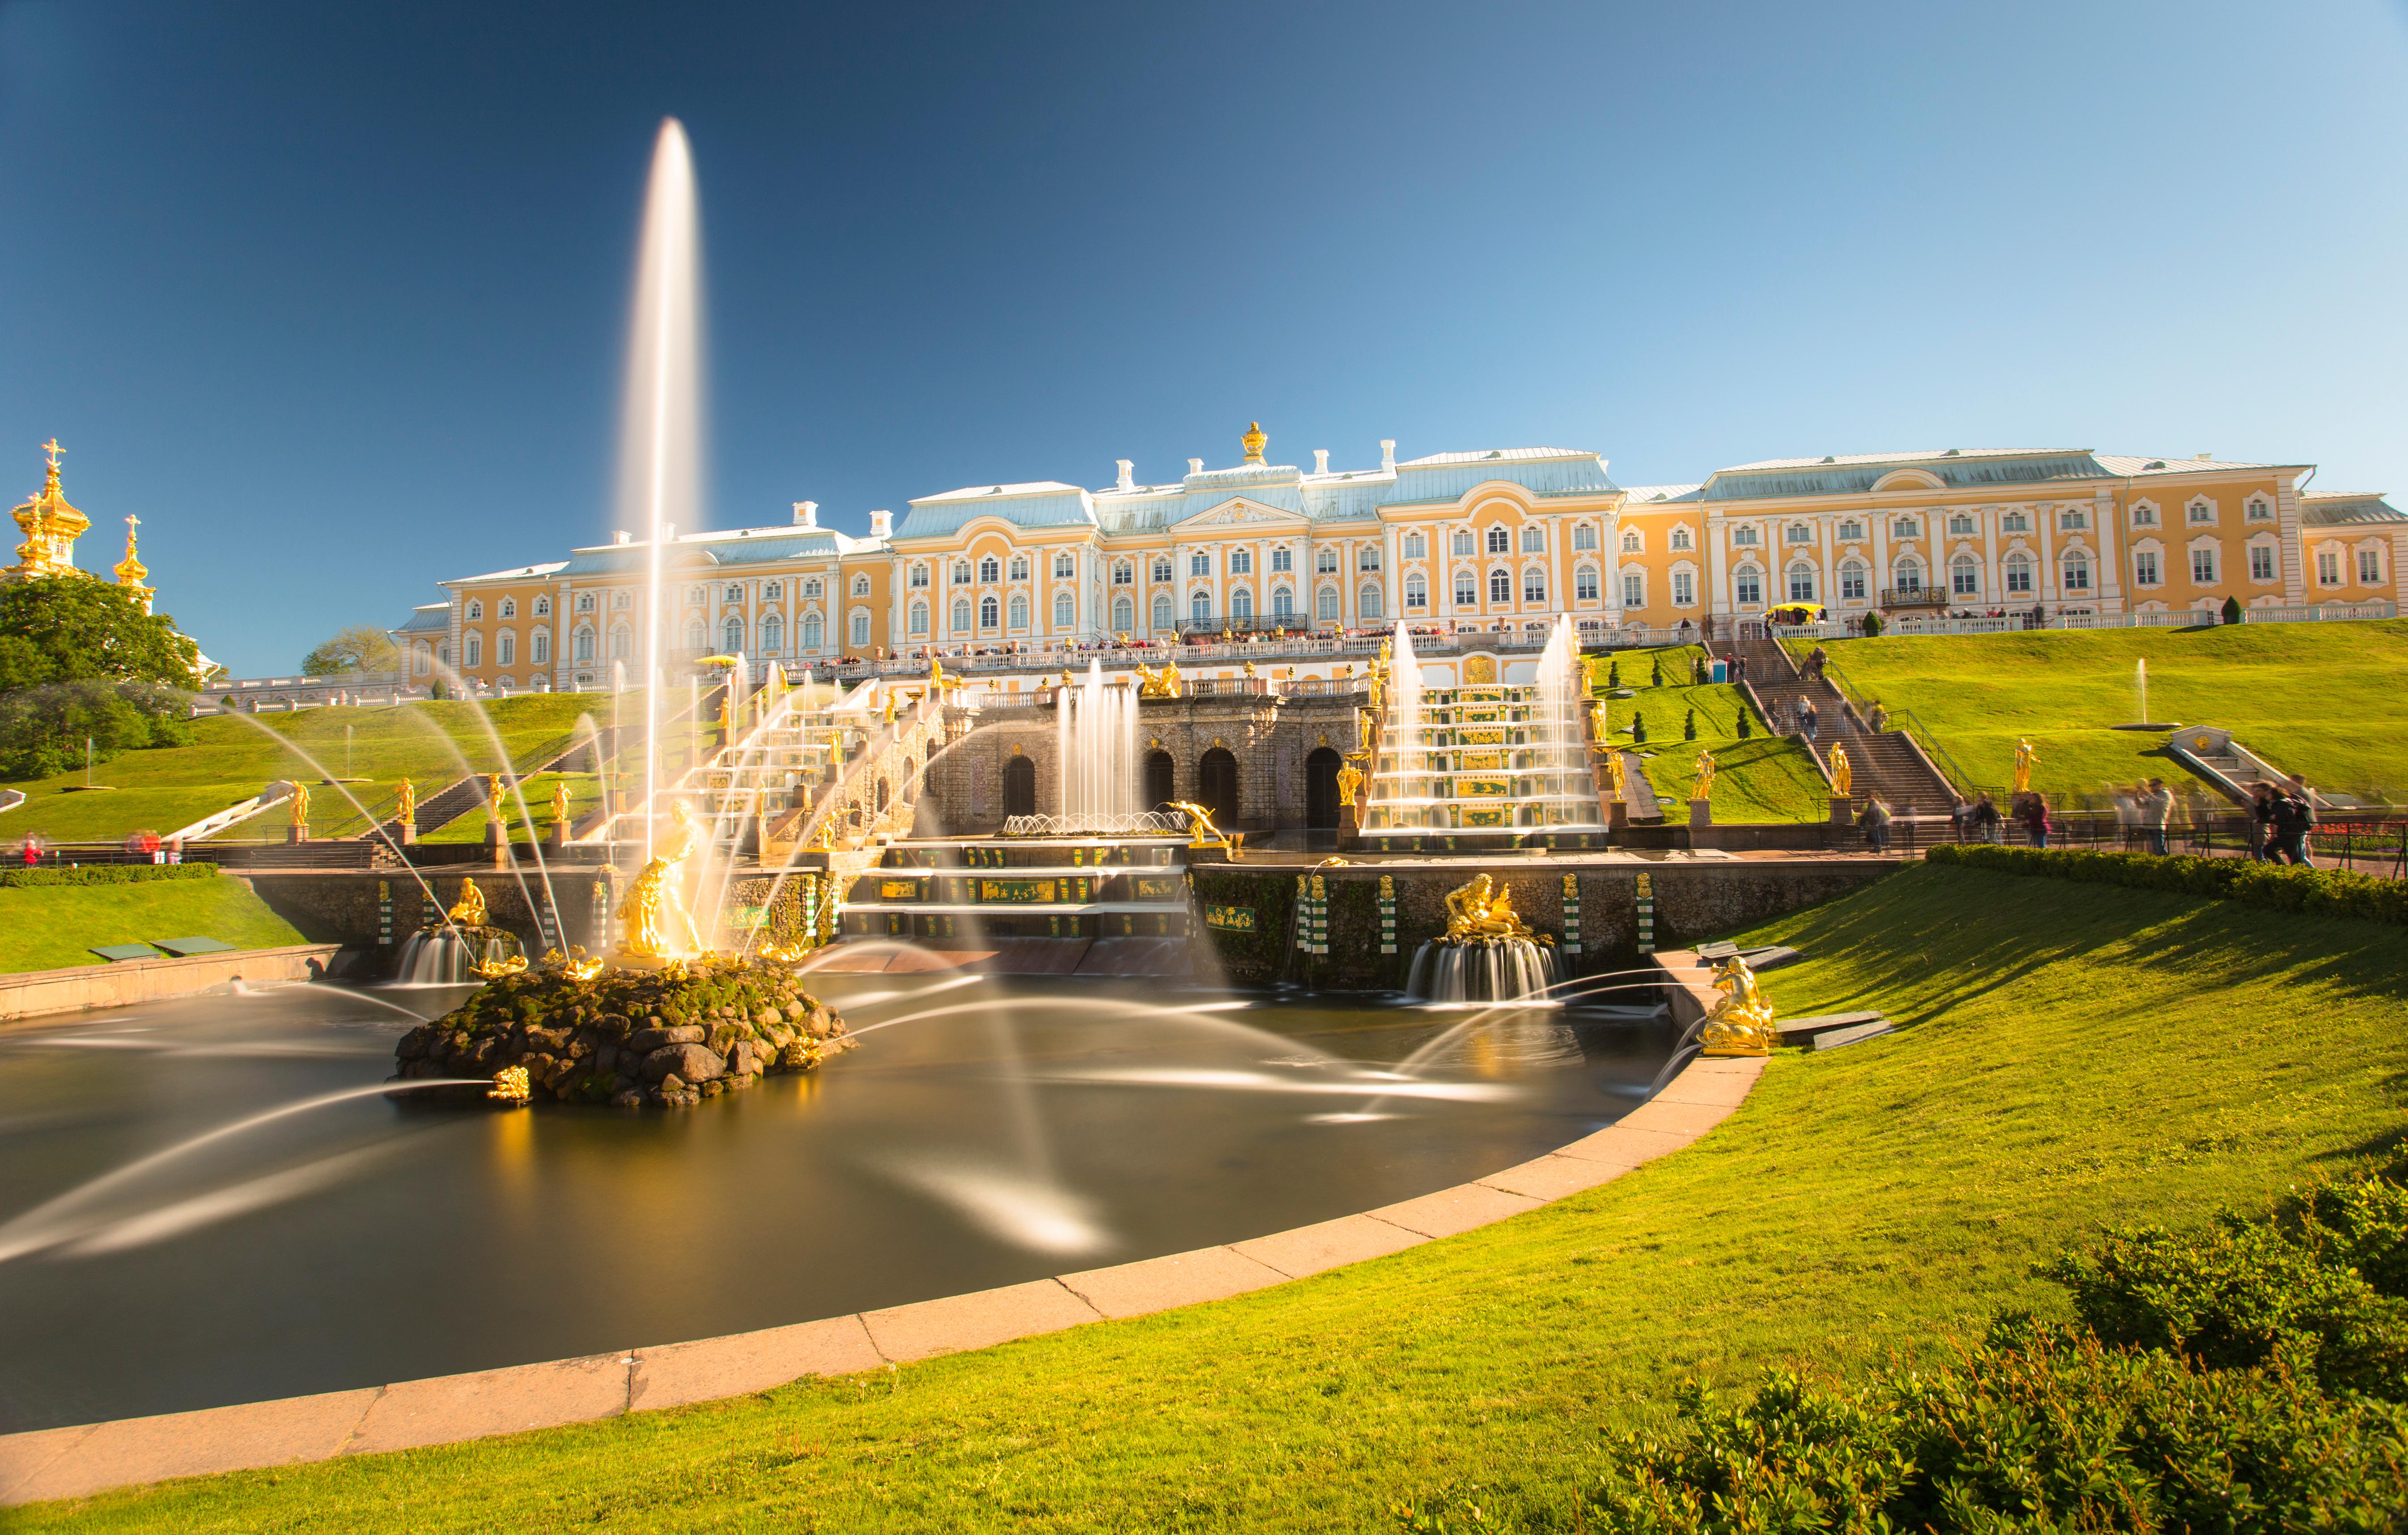 Автобусная экскурсия в Петергоф «Нижний парк и Большой дворец» со скидкой до 21%